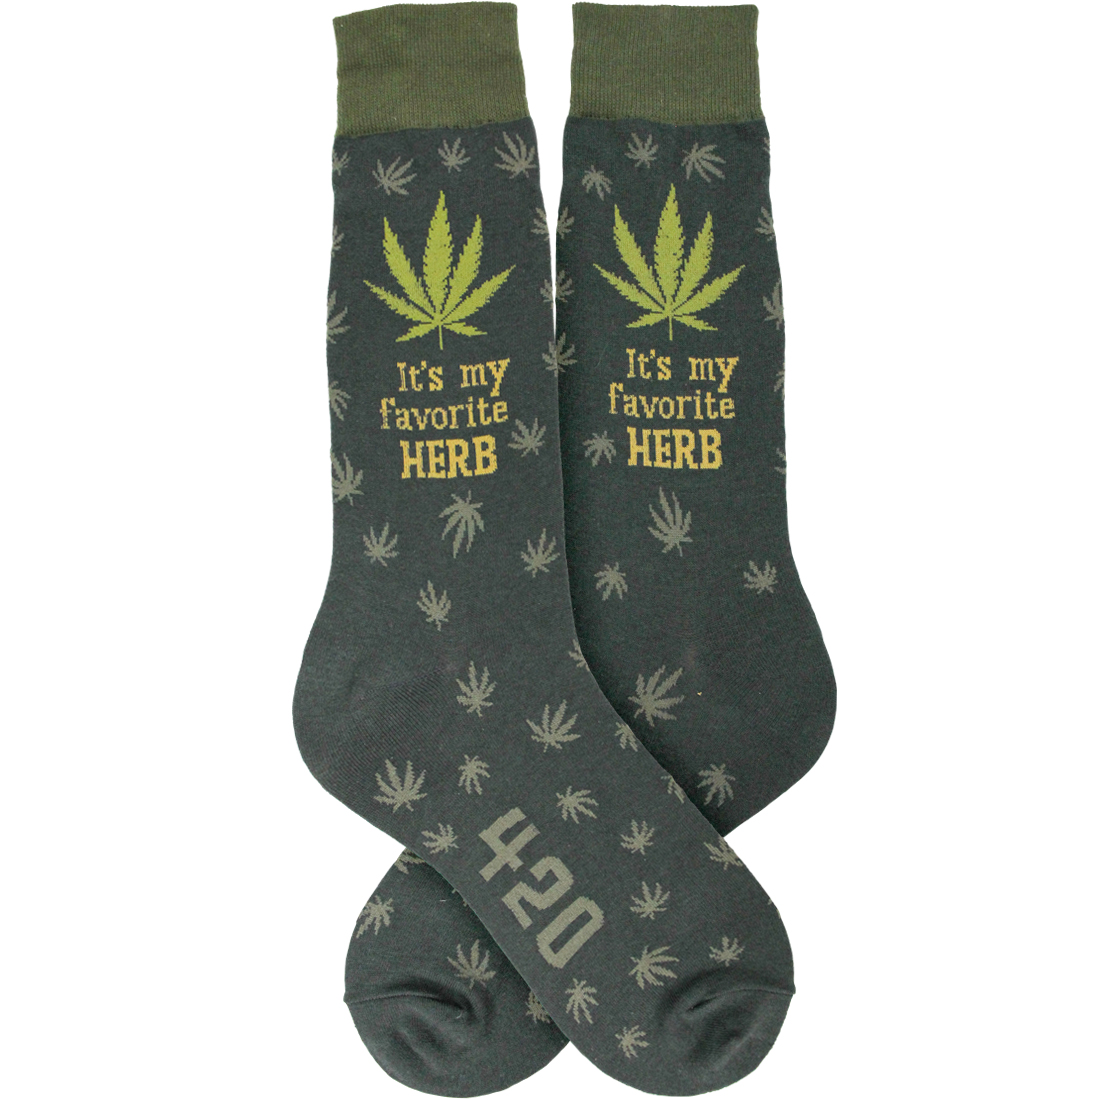 Funny Novelty Marijuana Socks for Men | Foot Traffic